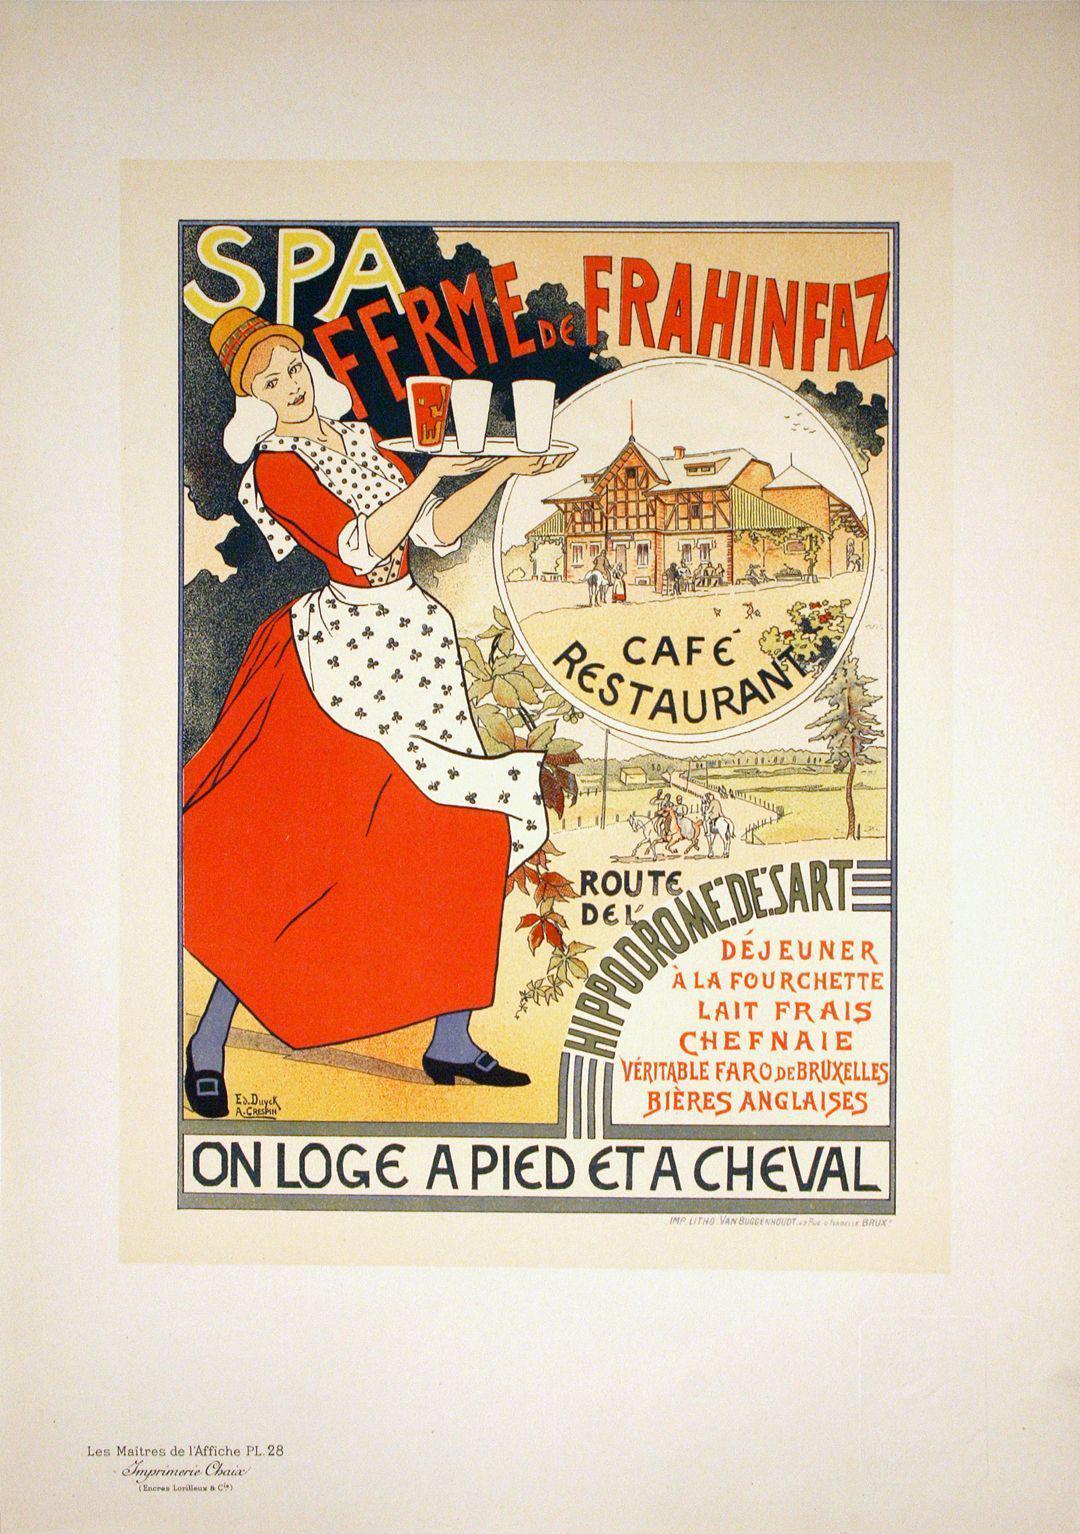 Original Maitres de L'Affiche Poster PL 28 - Spa Ferme de Frahinfaz by Duyck & Crespin